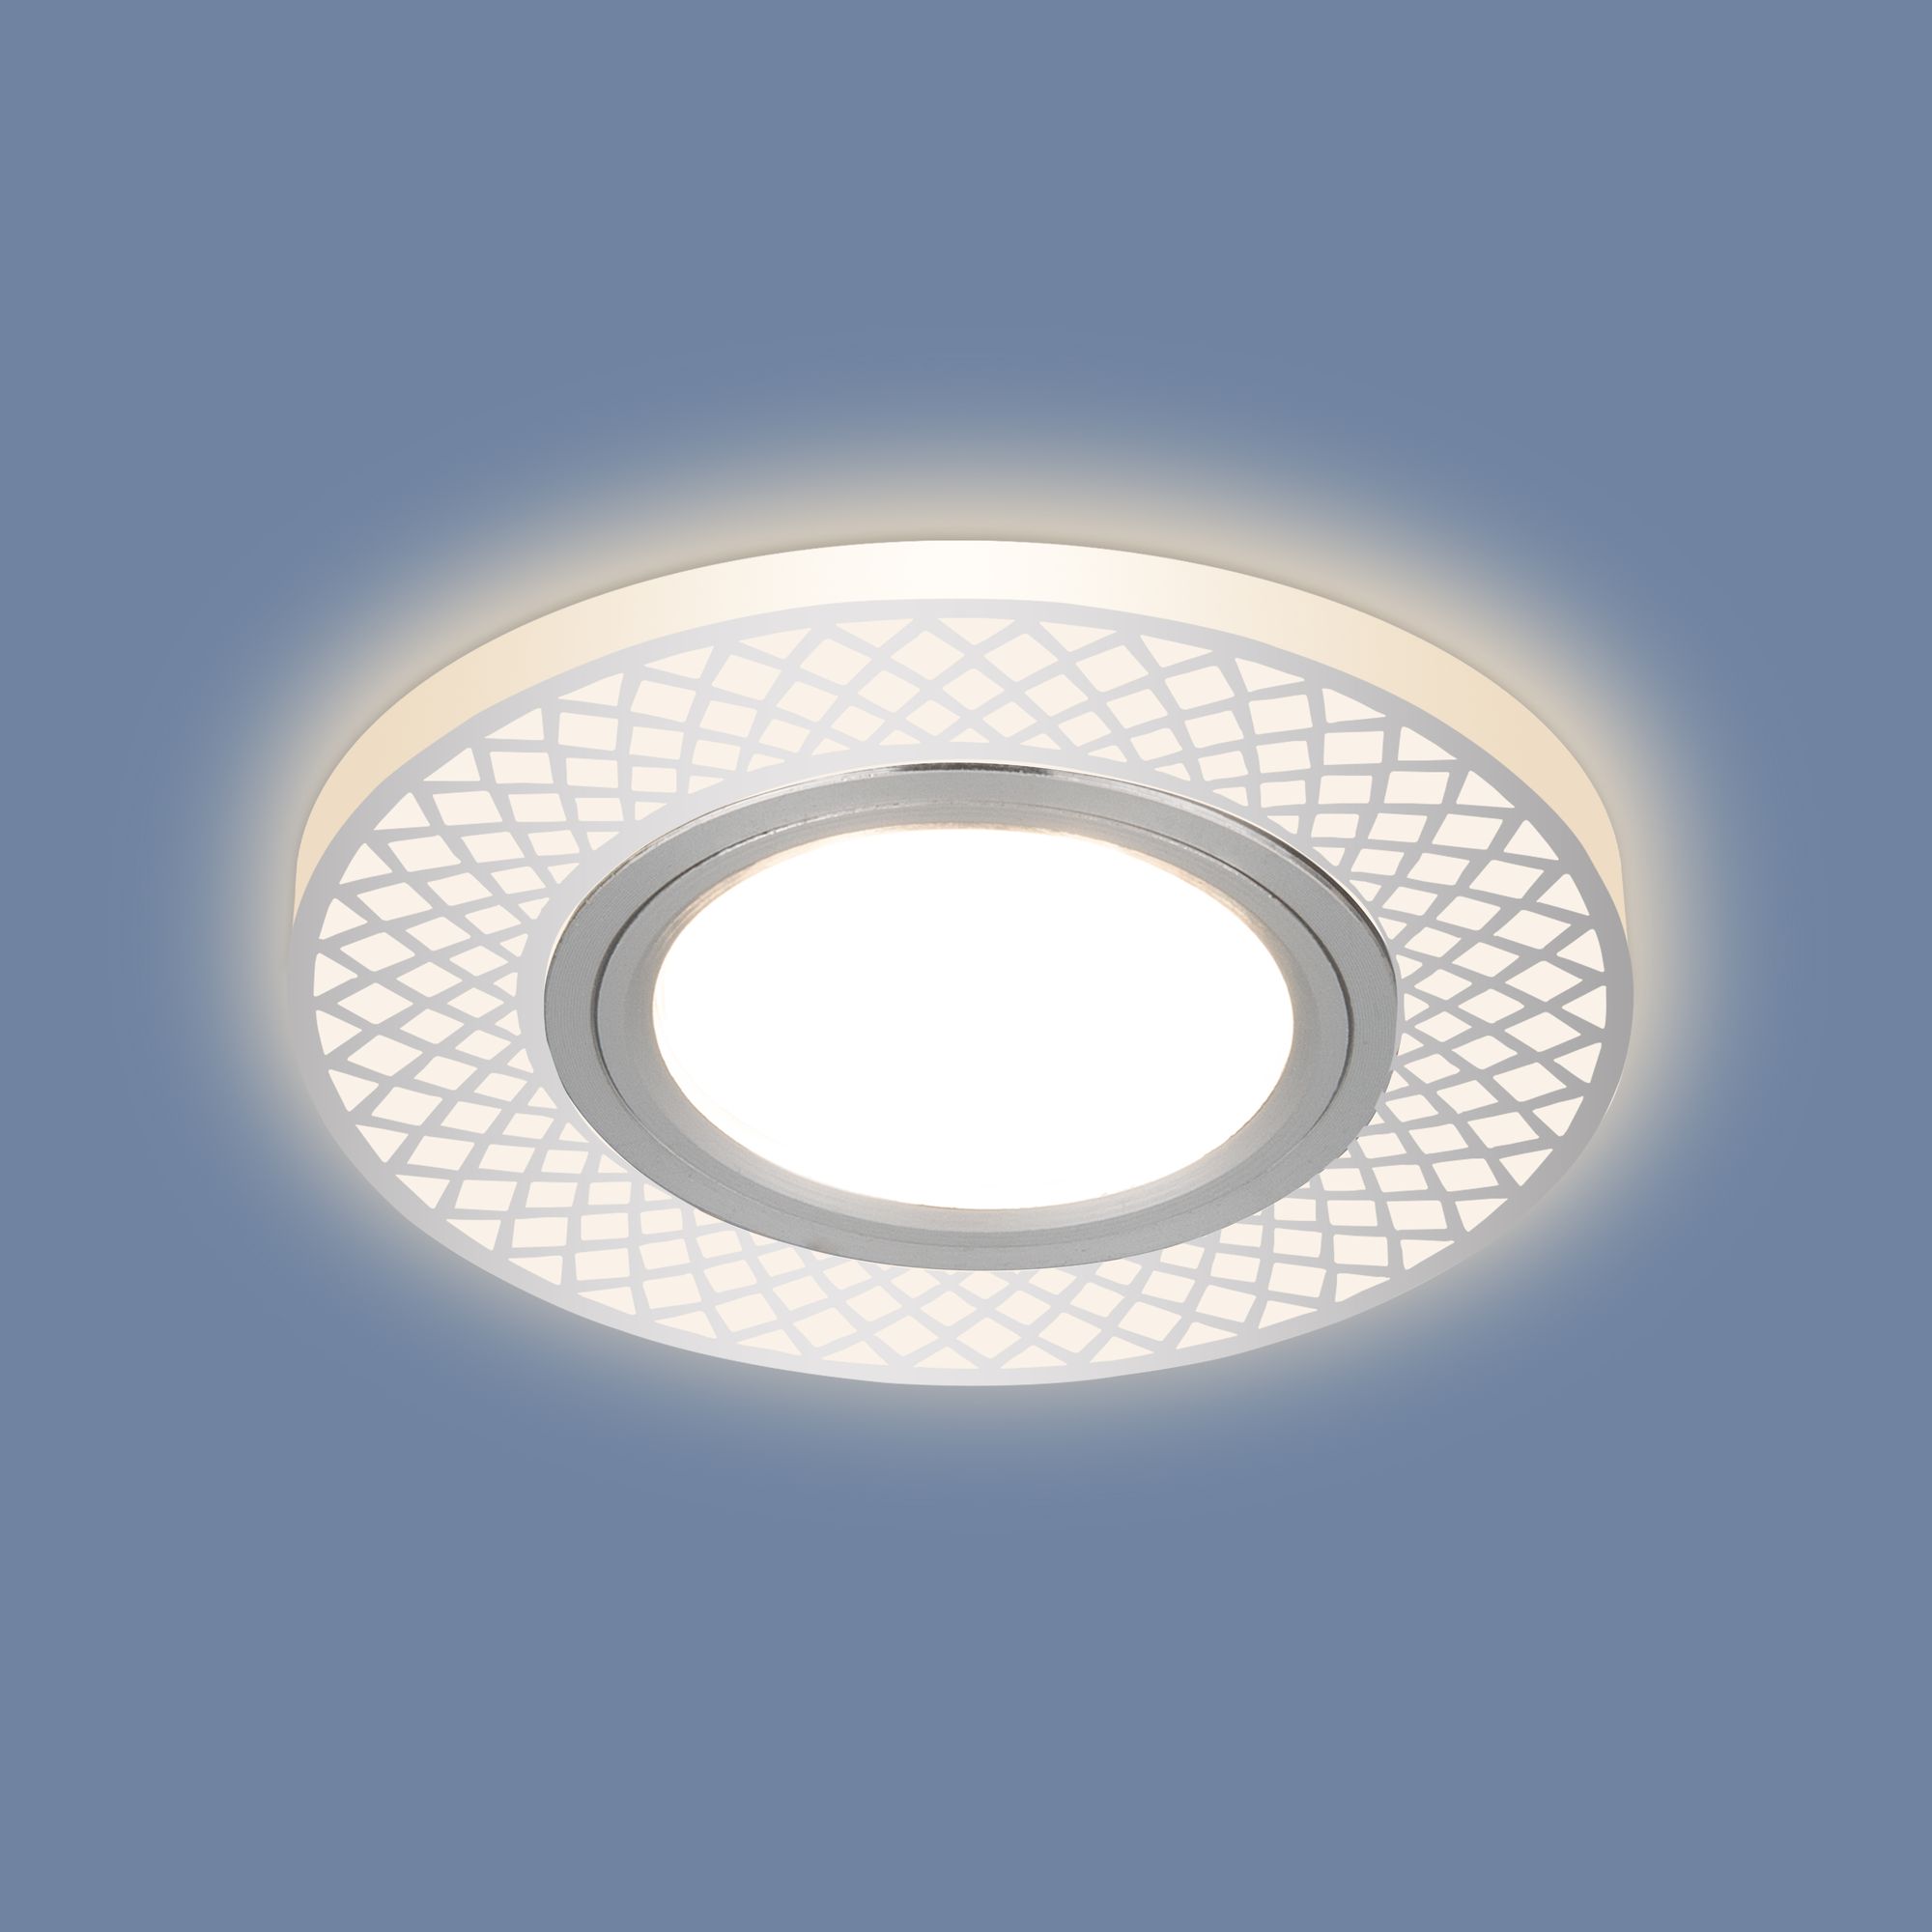 Встраиваемый потолочный светильник со светодиодной подсветкой 2232 MR16 CH хром